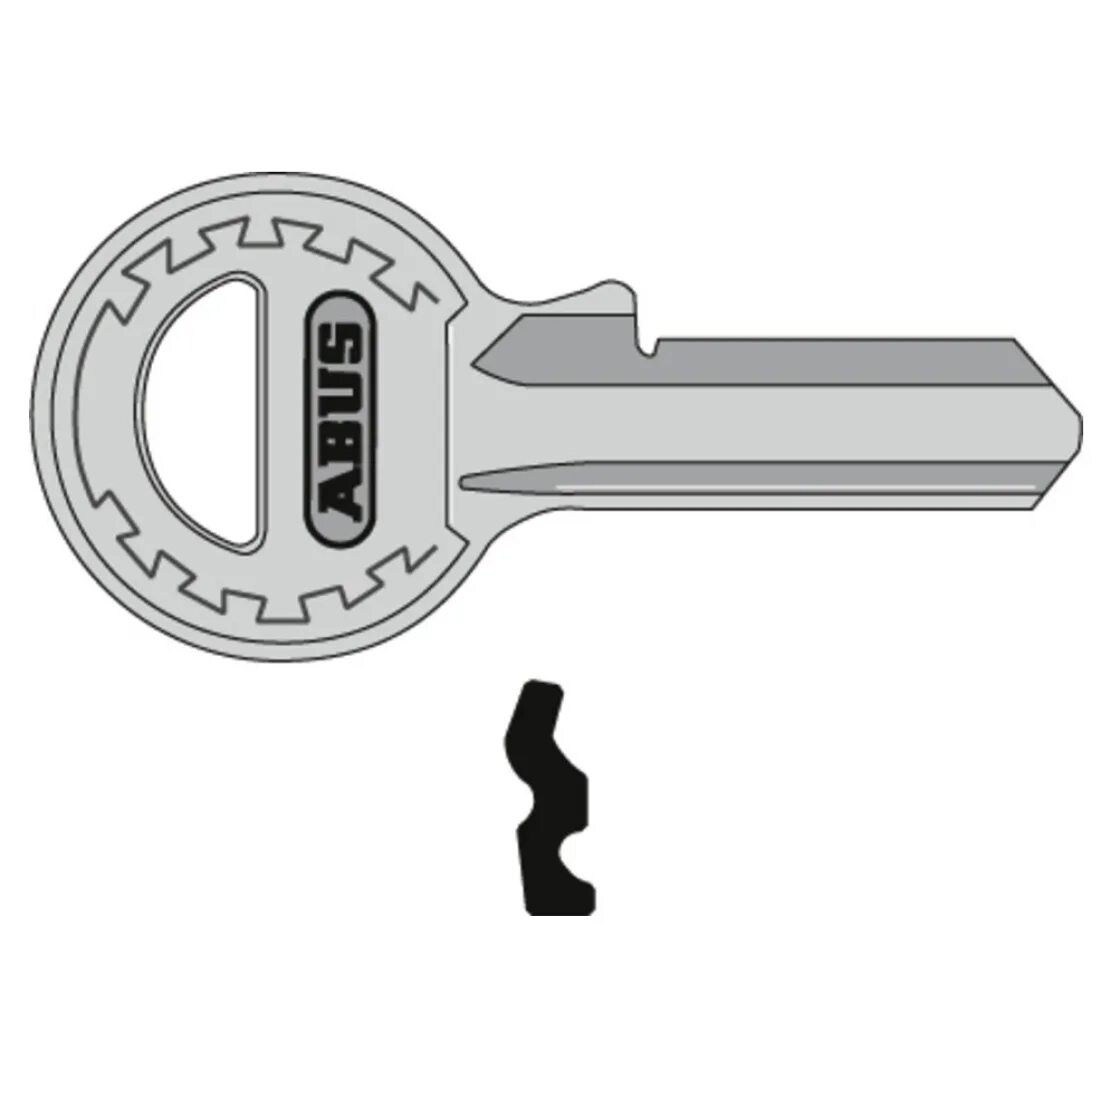 Профильный ключ. Профиль ключа. Тип ключа профильный. Приспособление Кейчеккер для проверки профиля ключа.